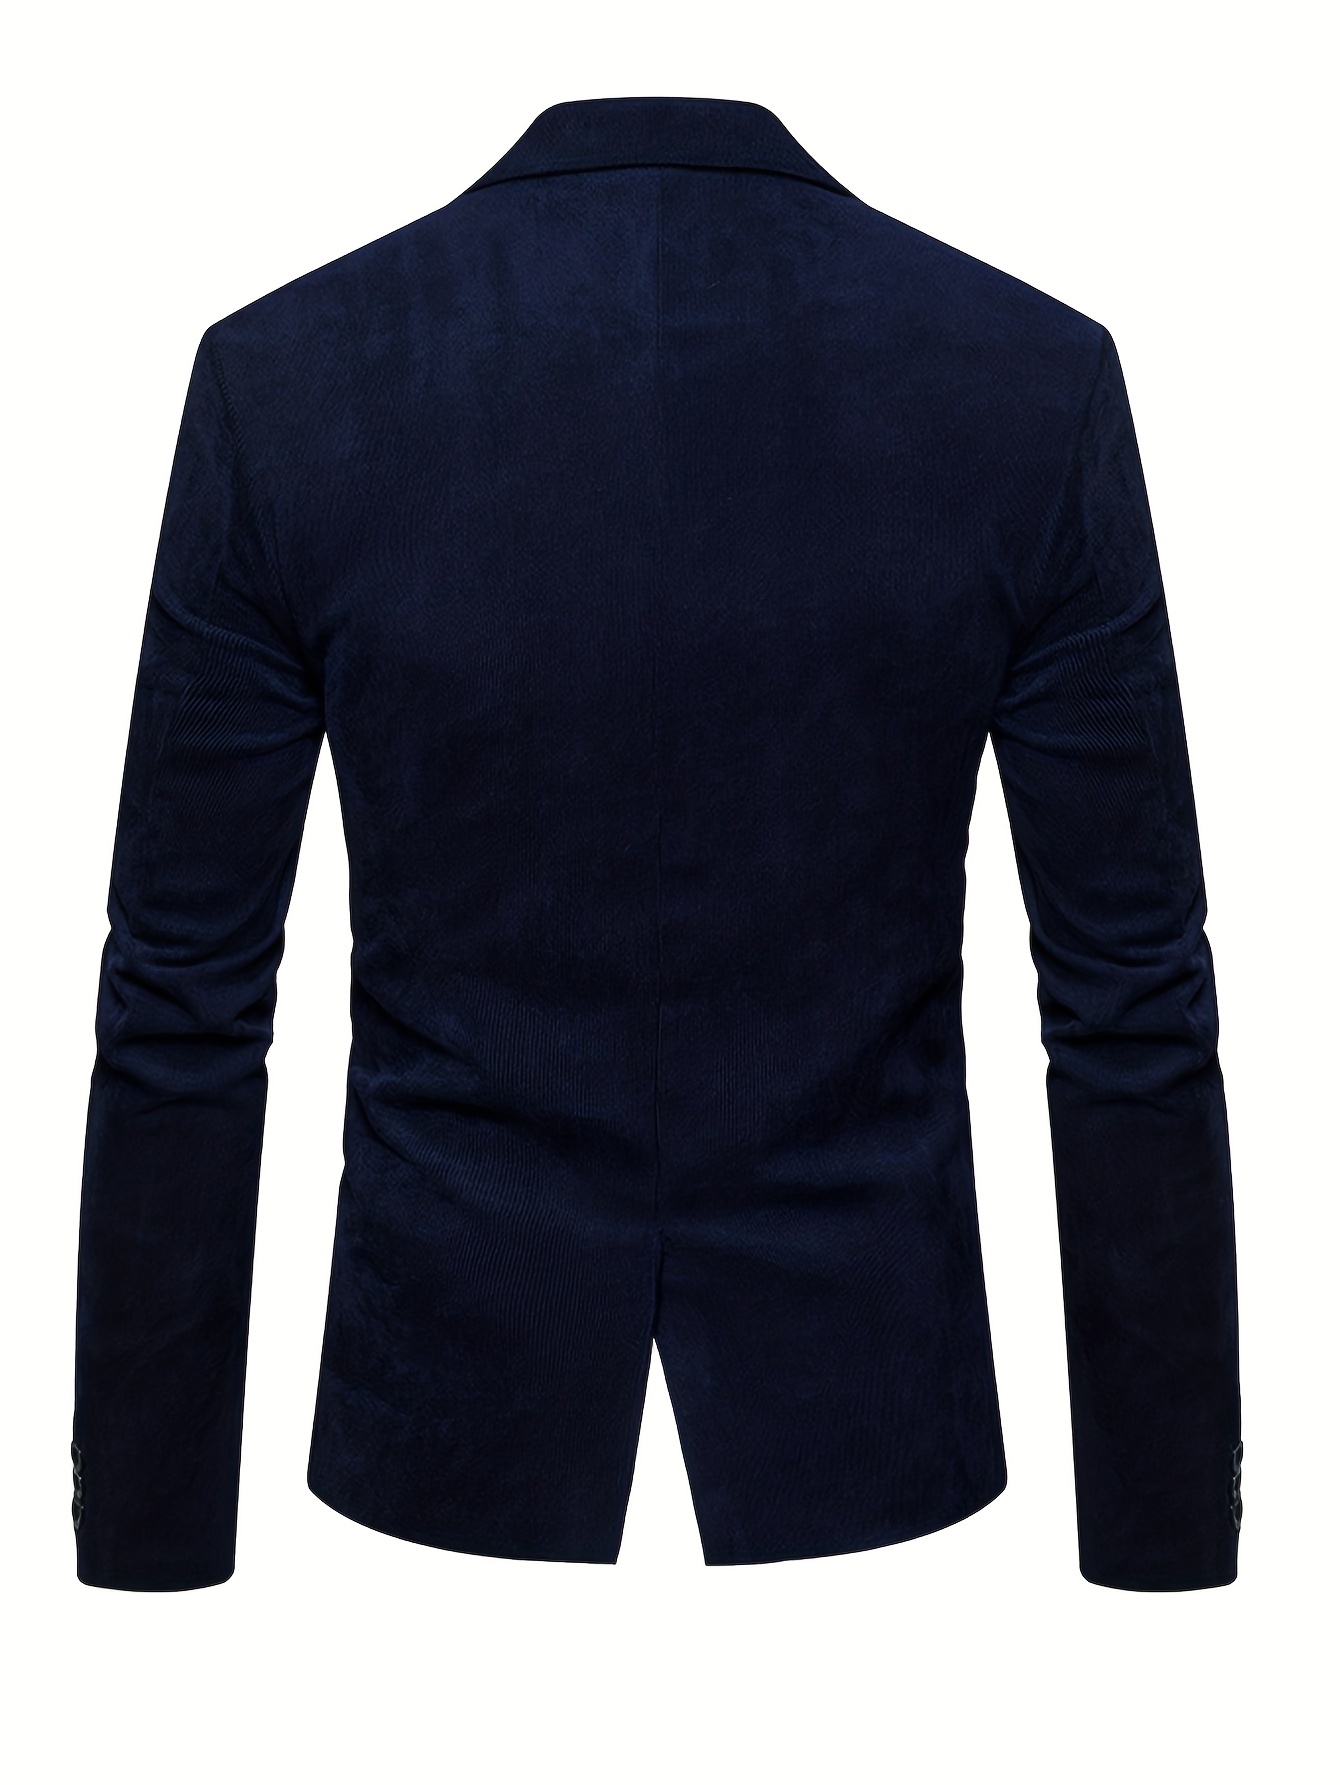 Solid Men's Fashionable Corduroy Casual Lapel Suit Jacket, Suitable For ...